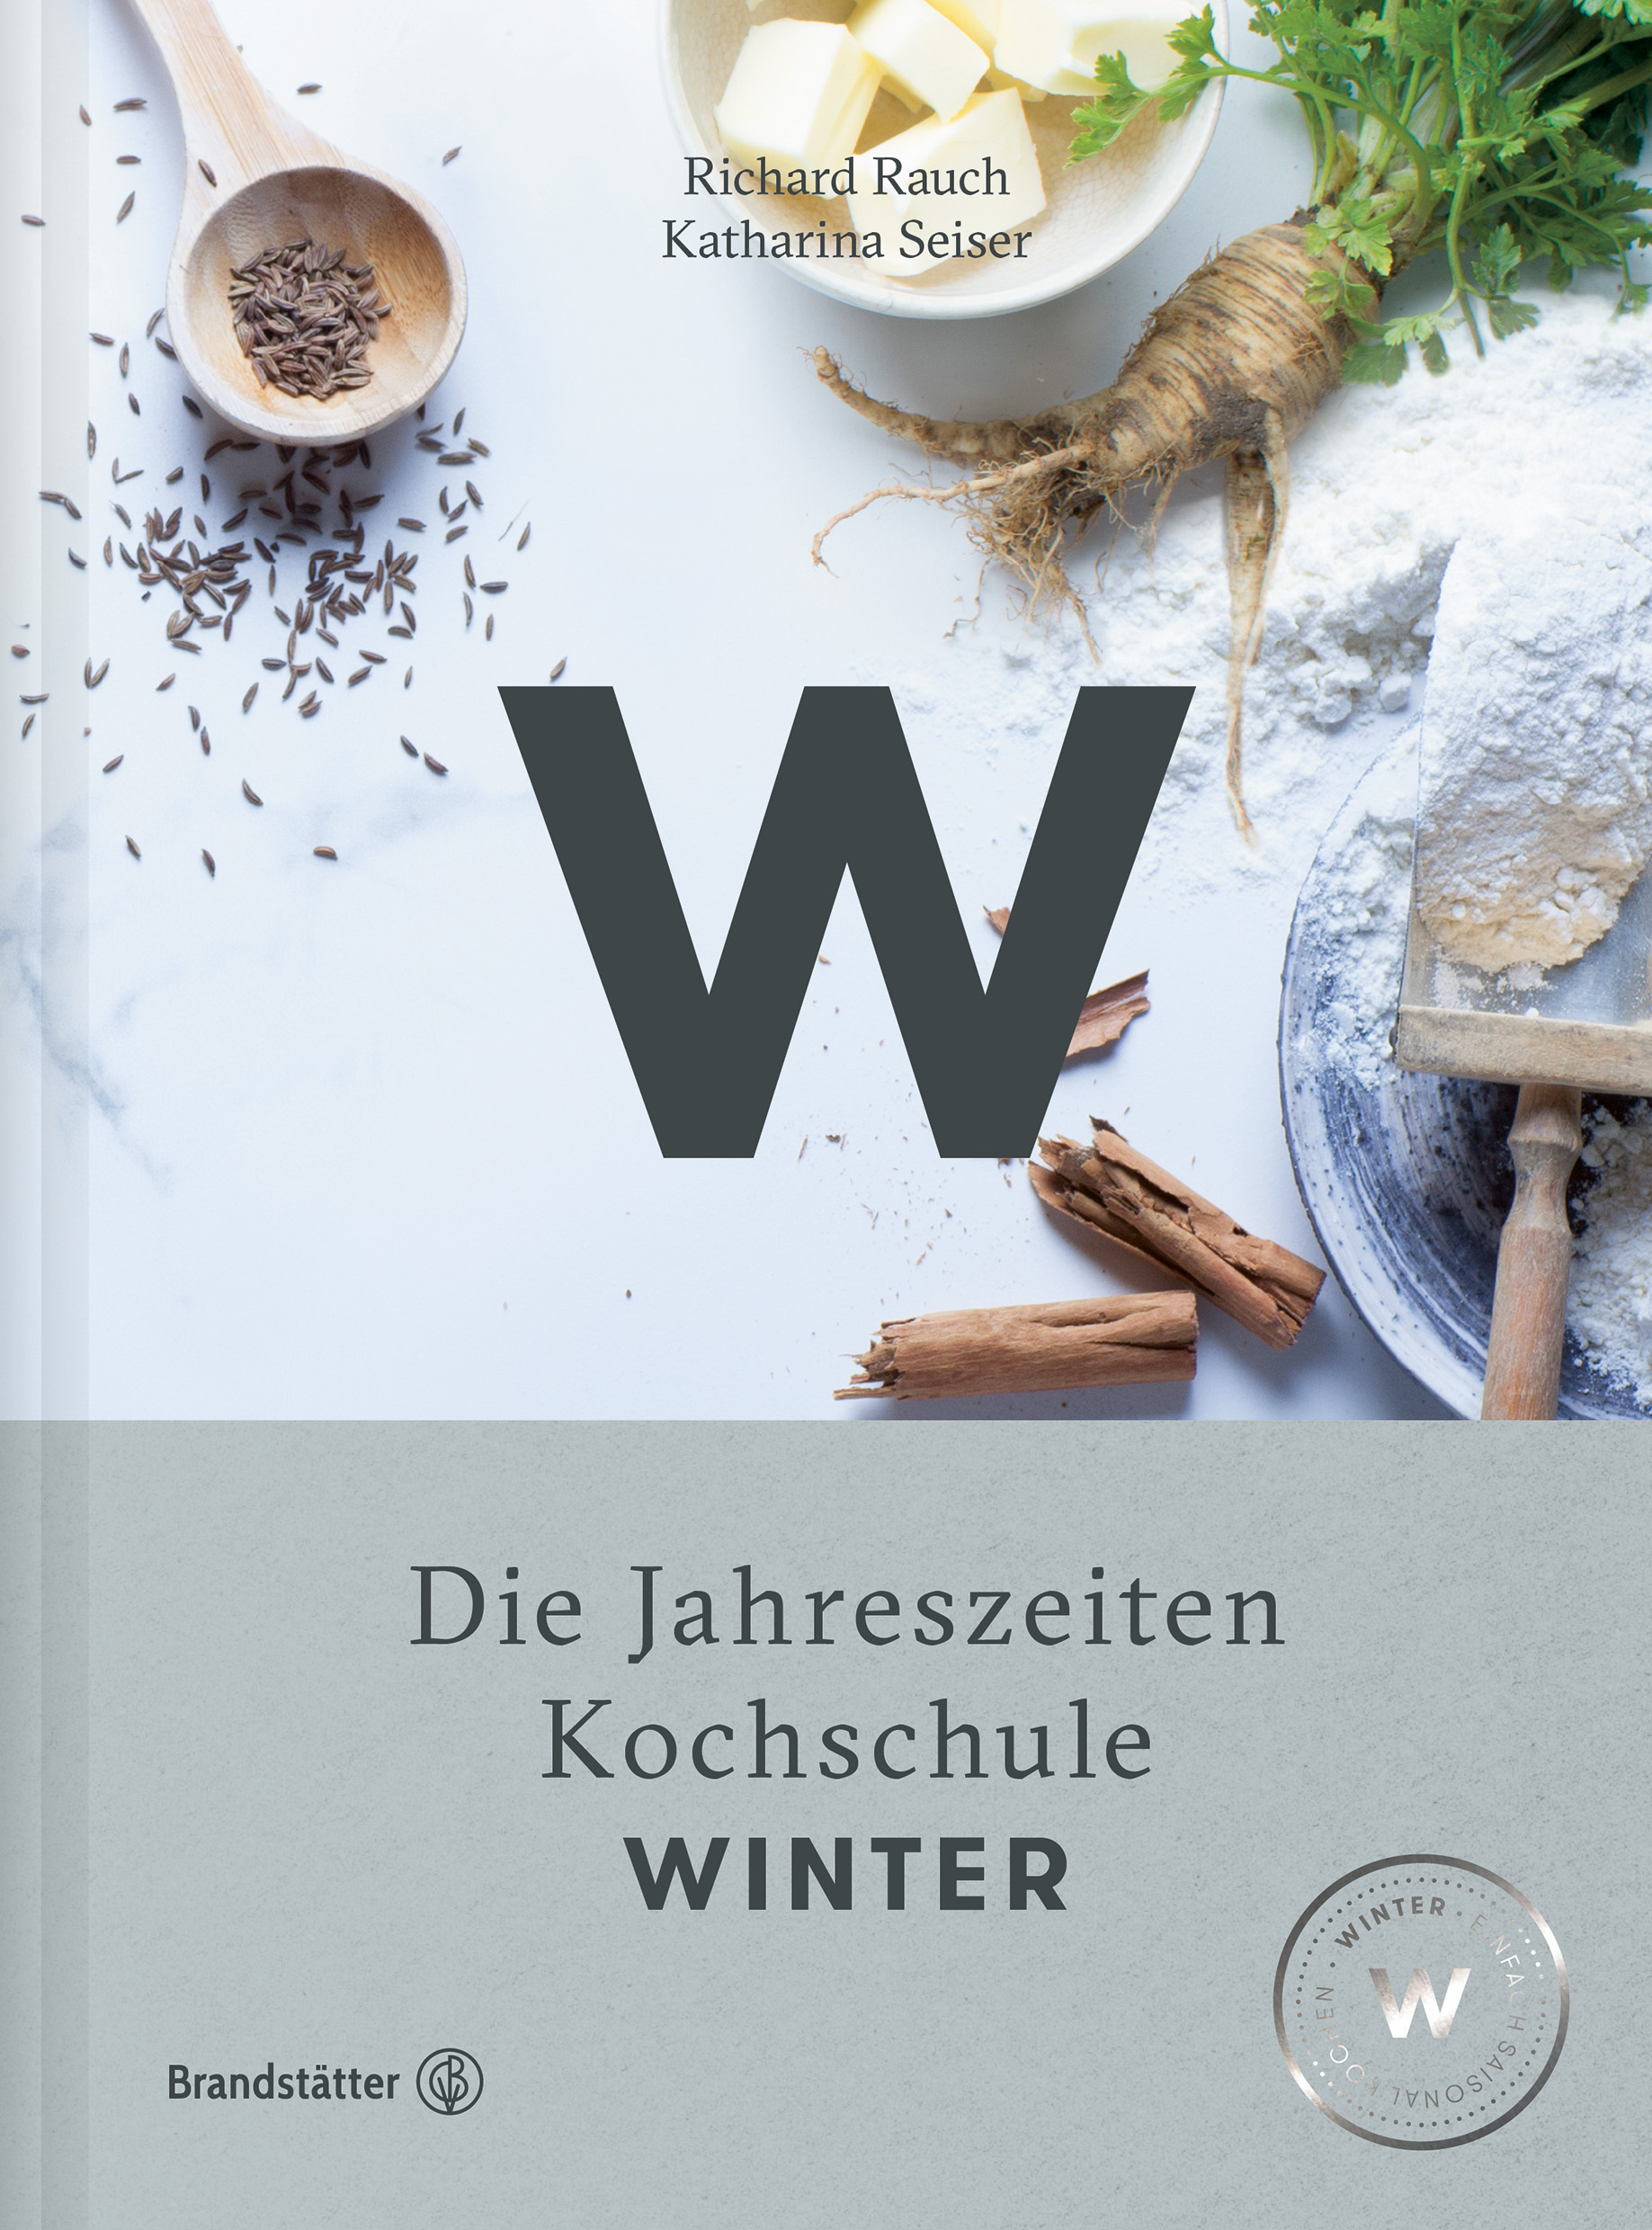 ("Die Jahrezeitenkochschule. WINTER" von Richard Rauch und Katharina Seiser. Neu im Brandstätter Verlag)